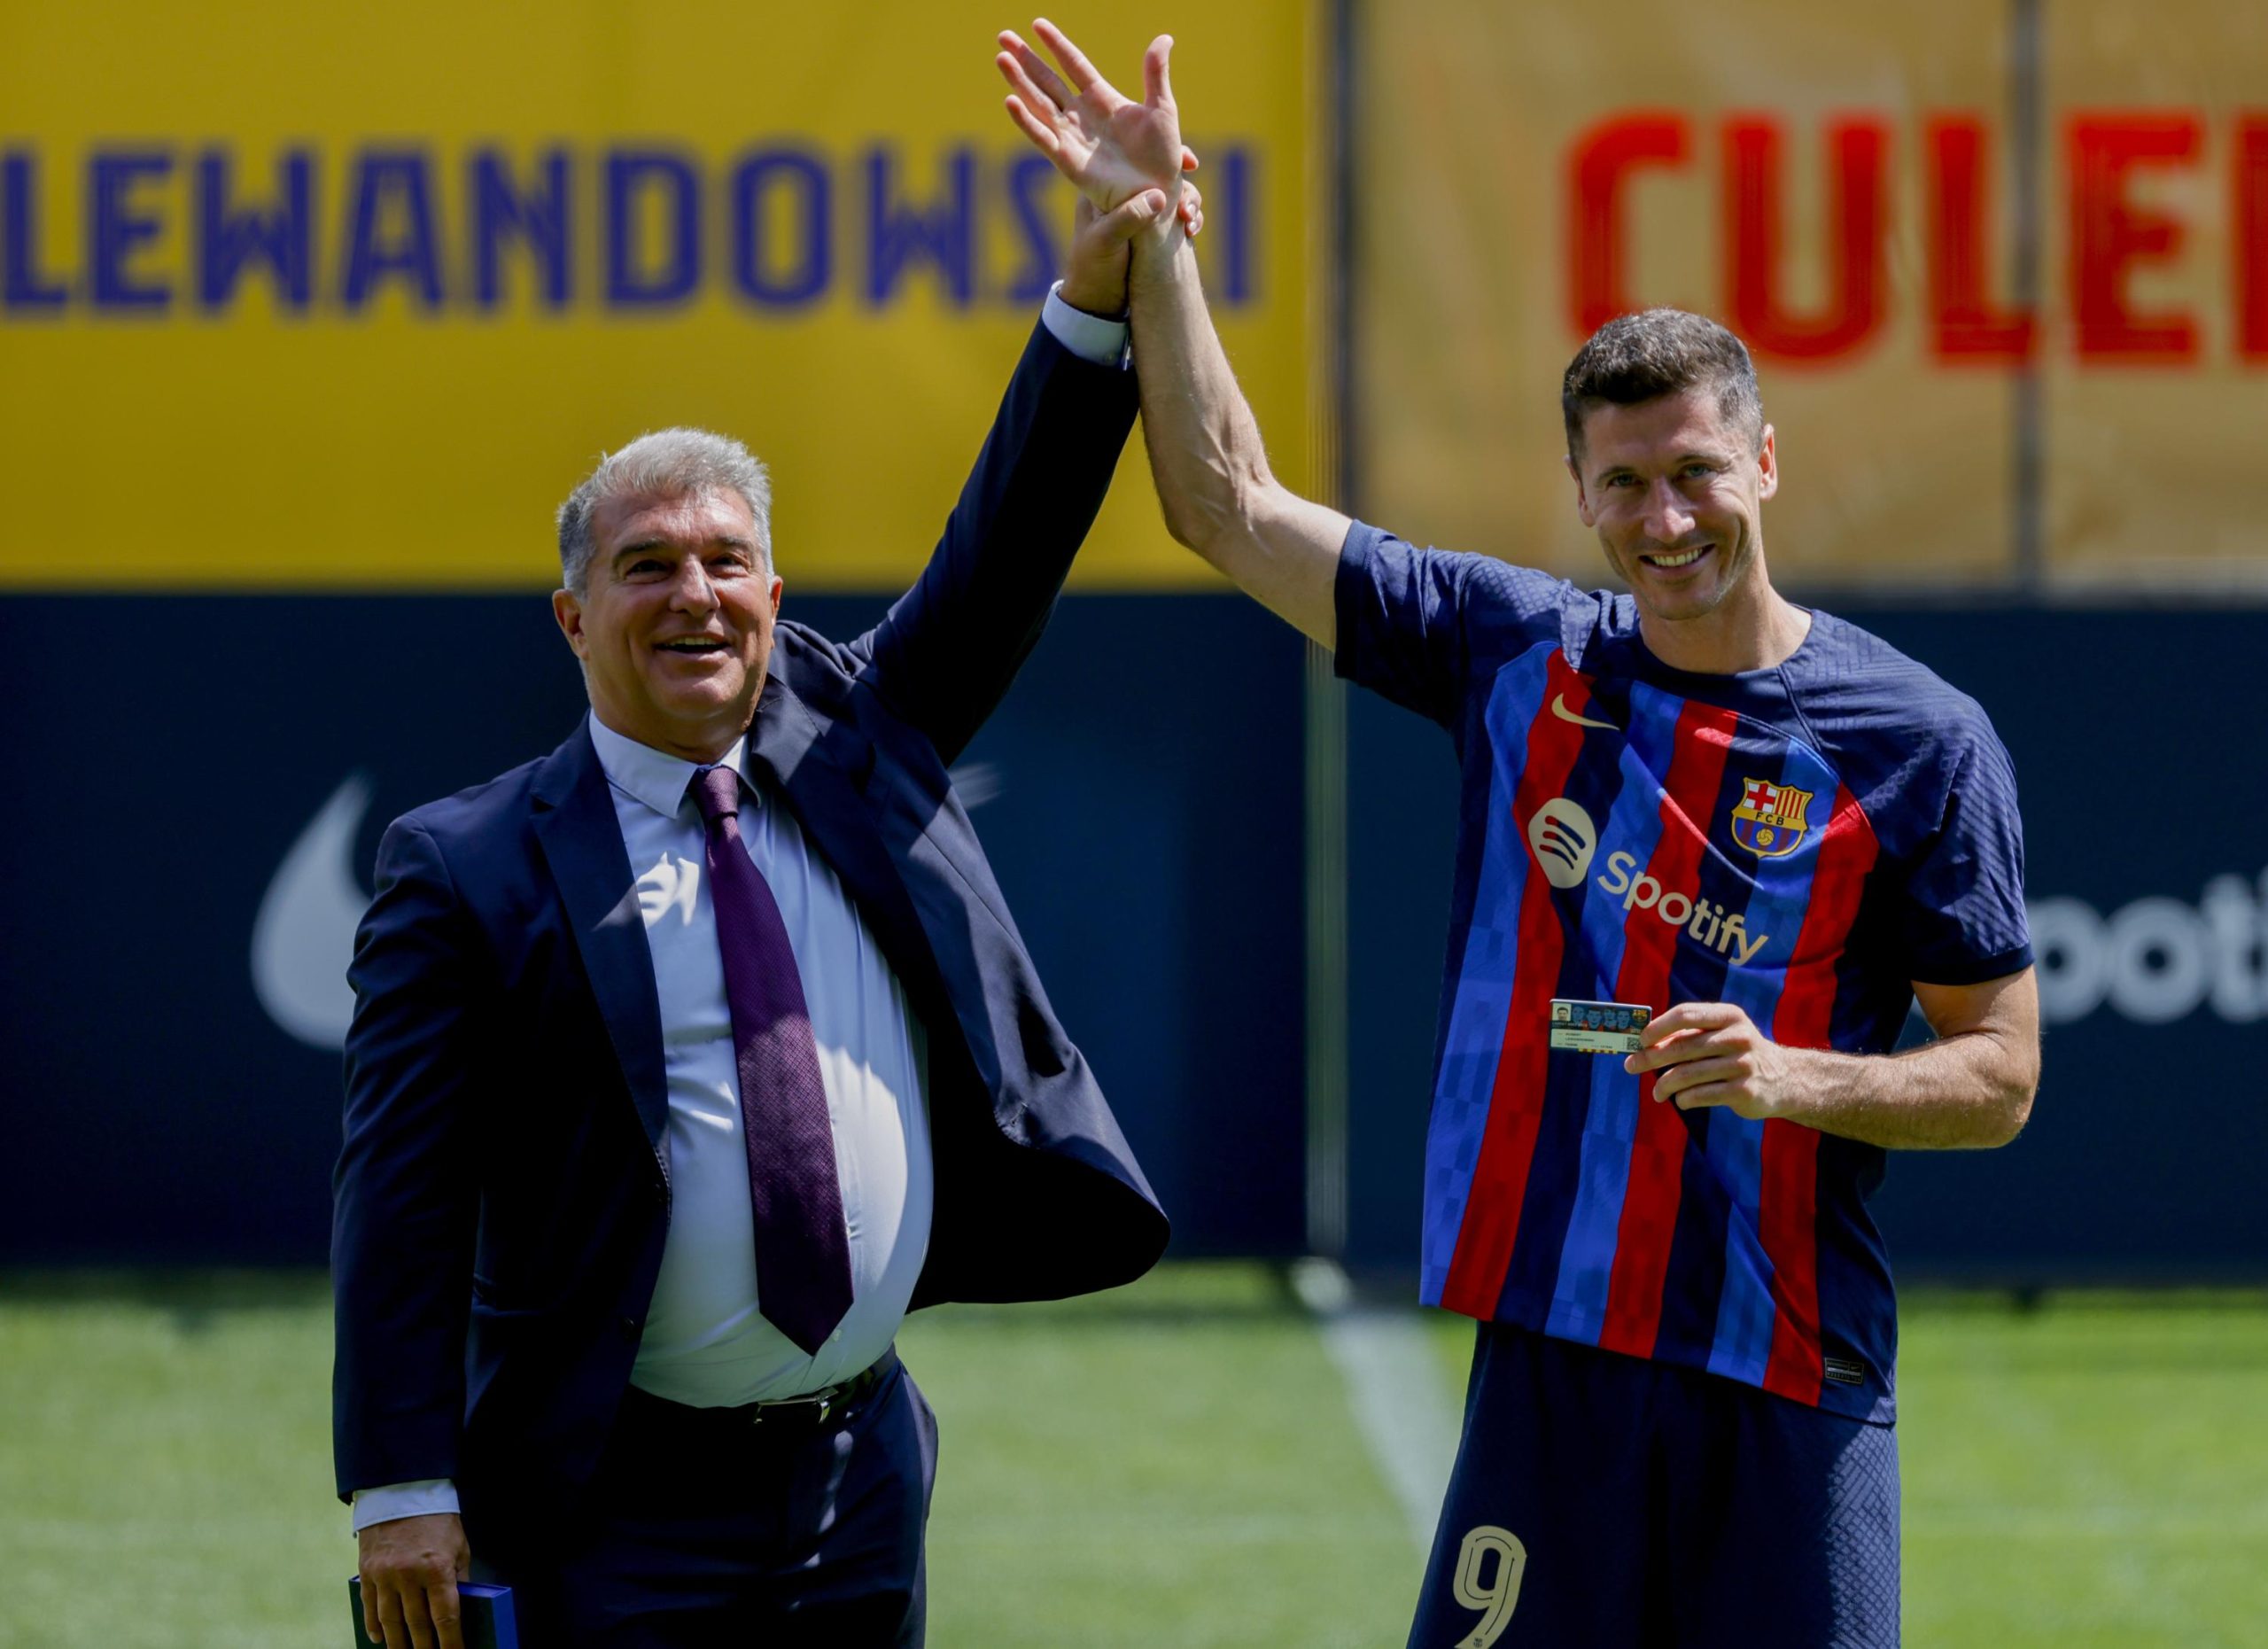 Mi edad no importa: Lewandowski apunta a reconstruir el Barcelona